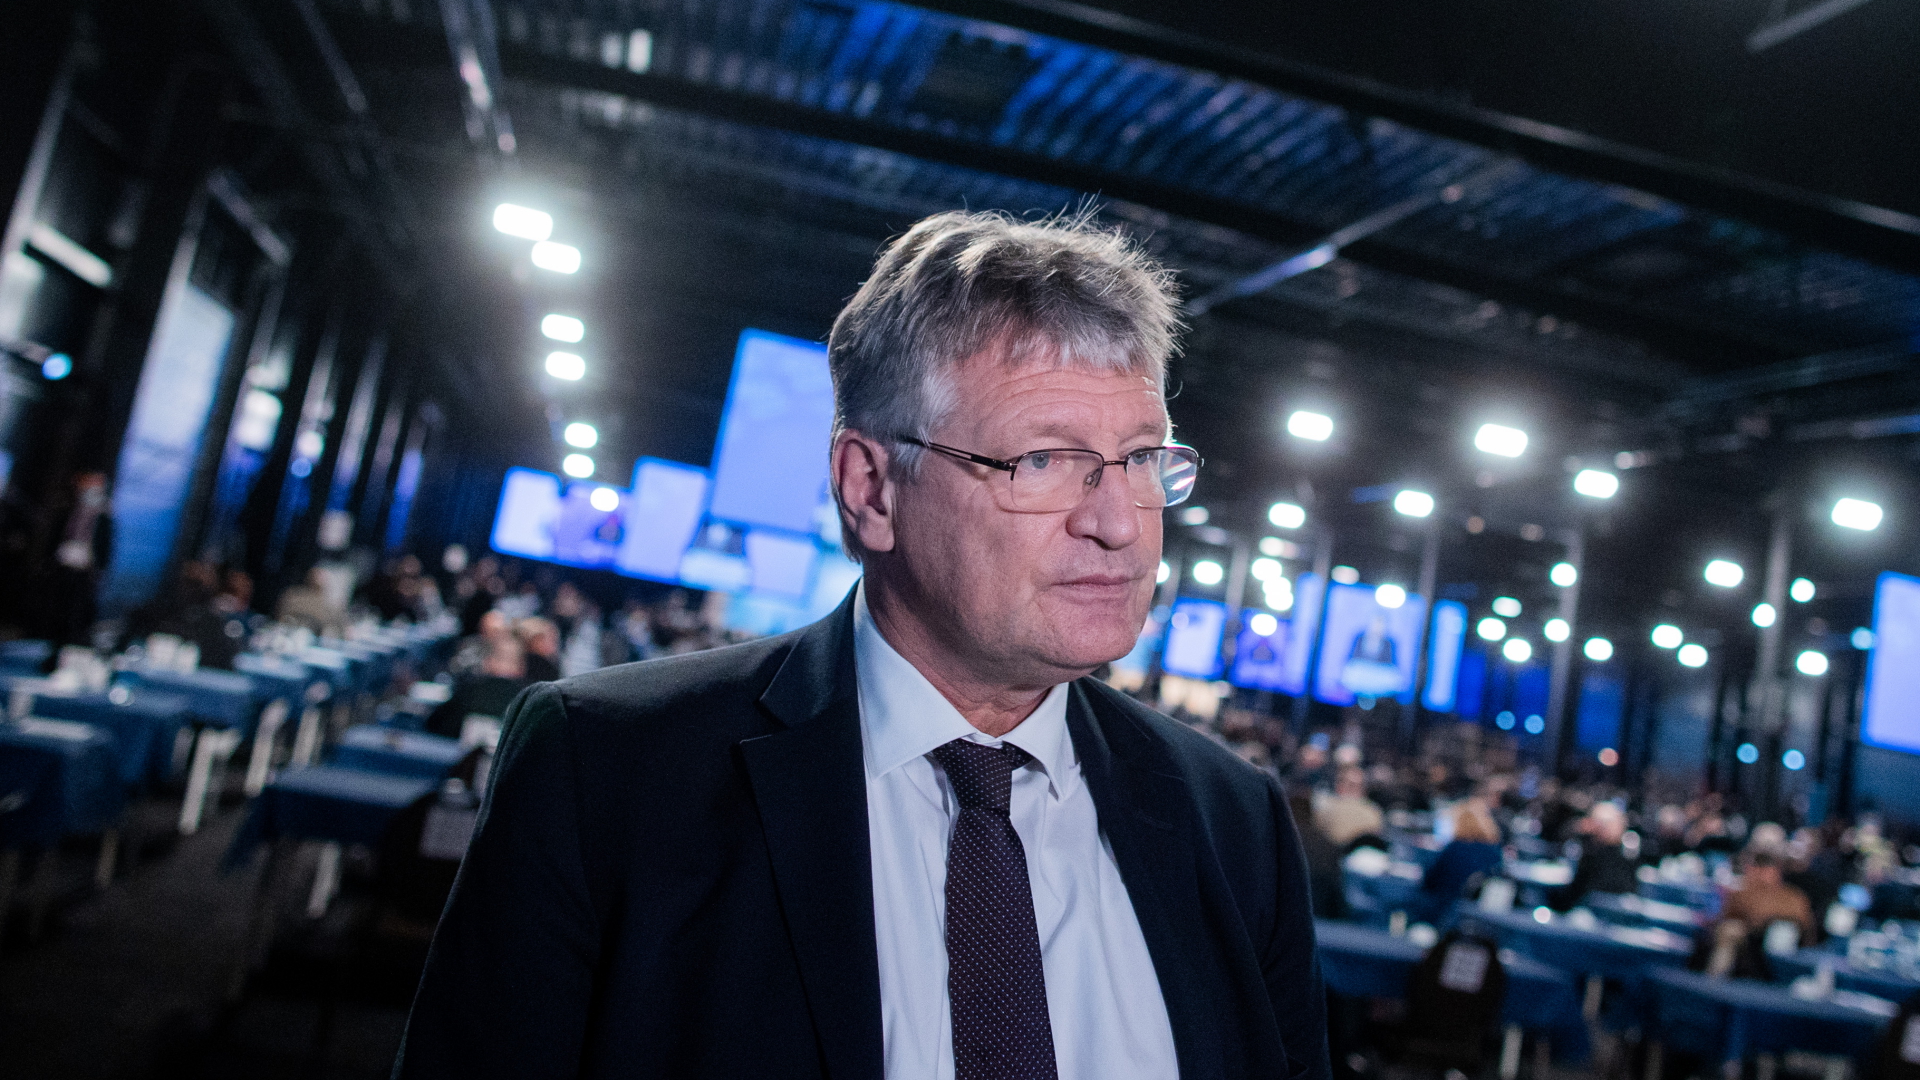  Jörg Meuthen, AfD-Bundessprecher, gibt beim Bundesparteitag ein Interview | dpa